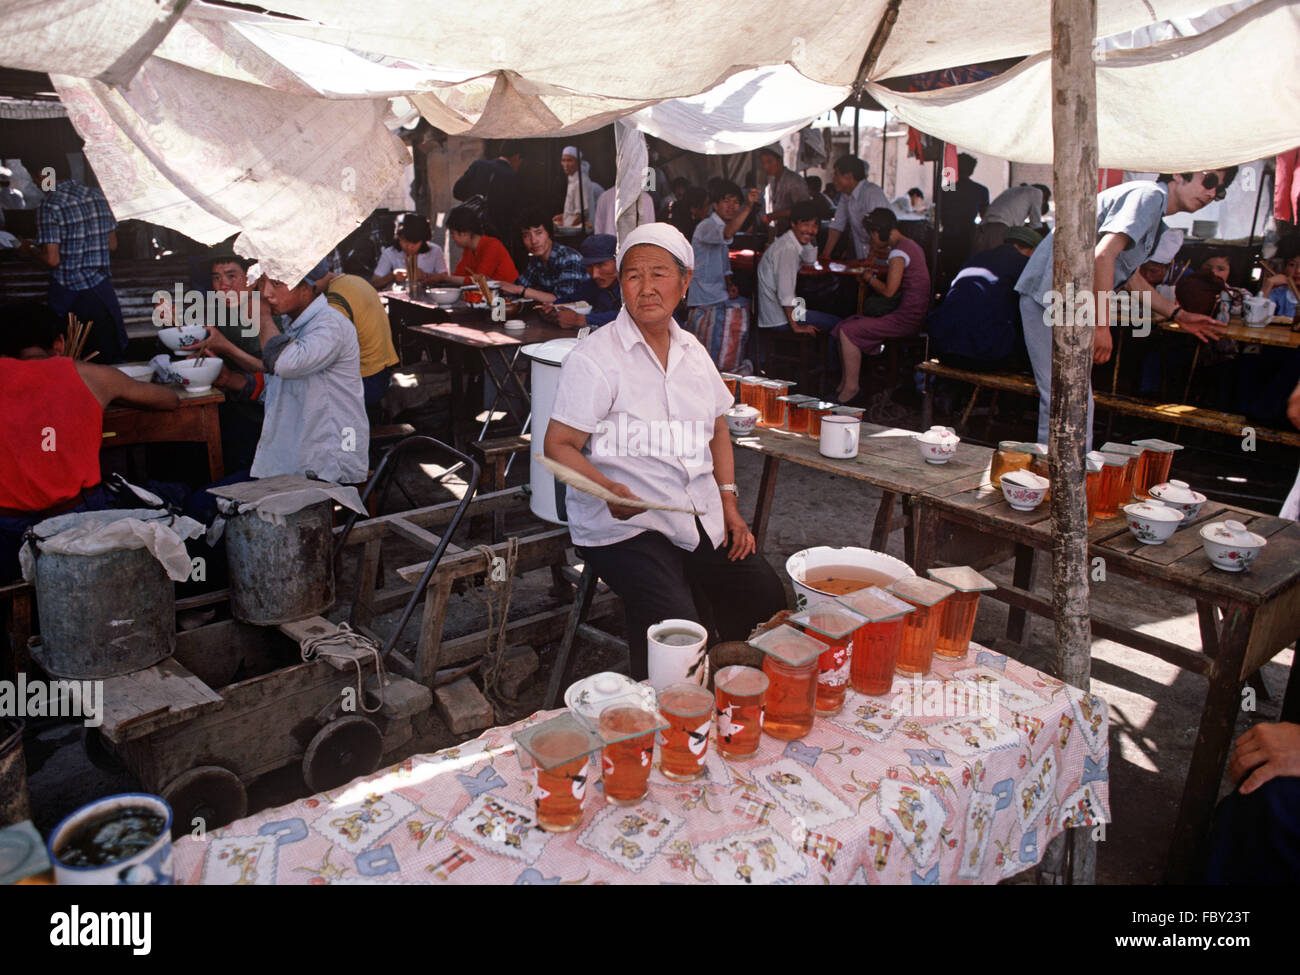 Chinesische Muslimin, Verkauf von Tee trinkt in Yinchuan Markt, autonomen Region Ningxia, China Stockfoto